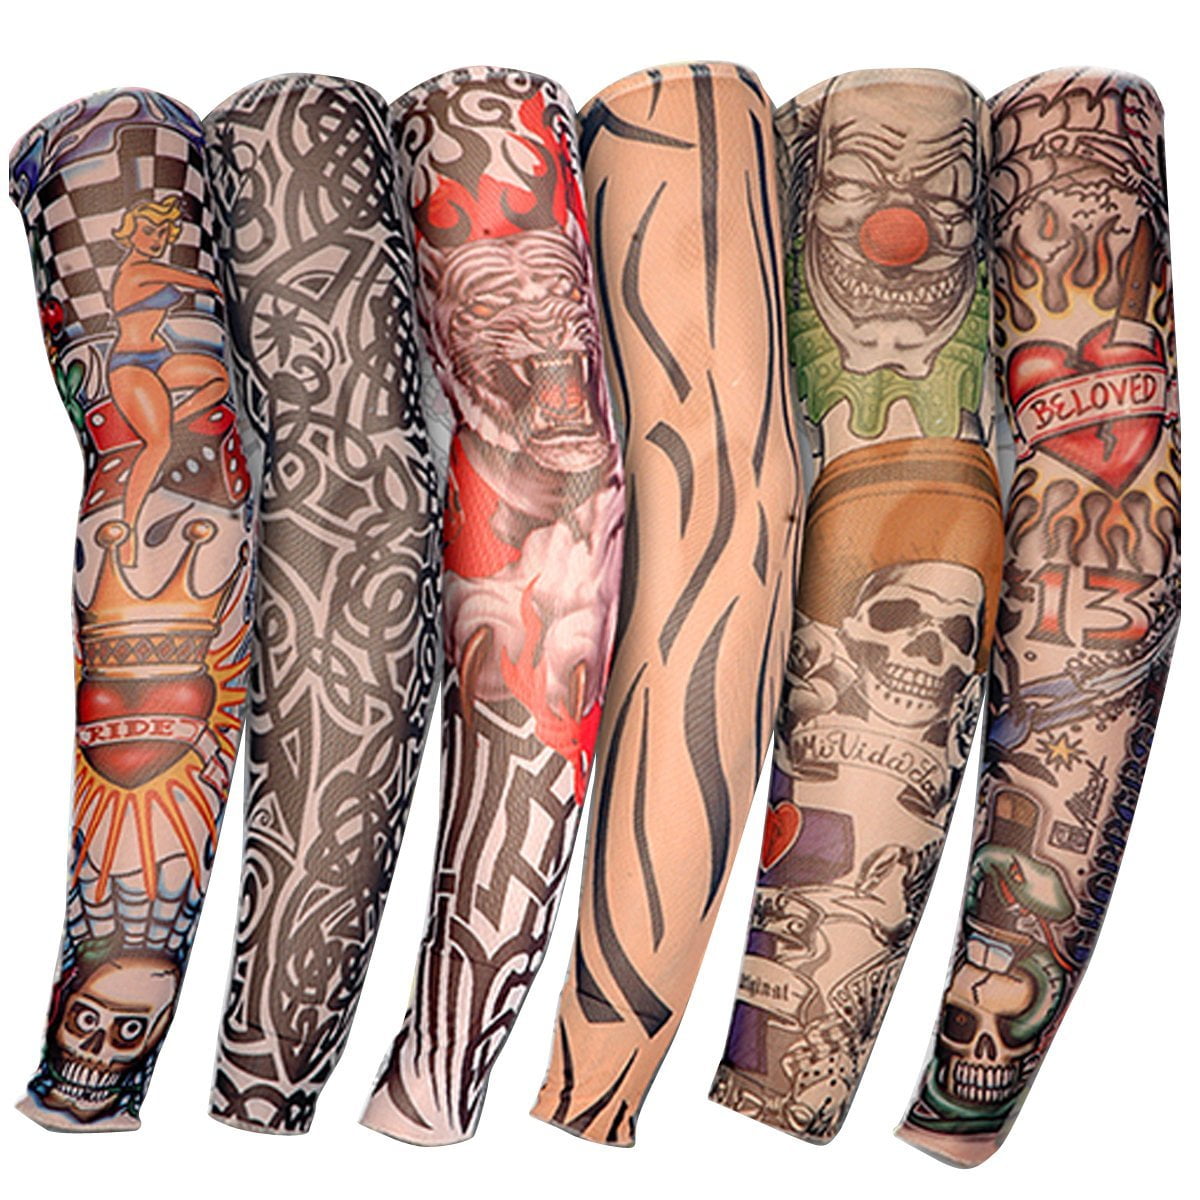 6X Arts Fake Temporary Tattoo Arm Sunscreen Sleeves Full Body Art Sleeves Kit US 